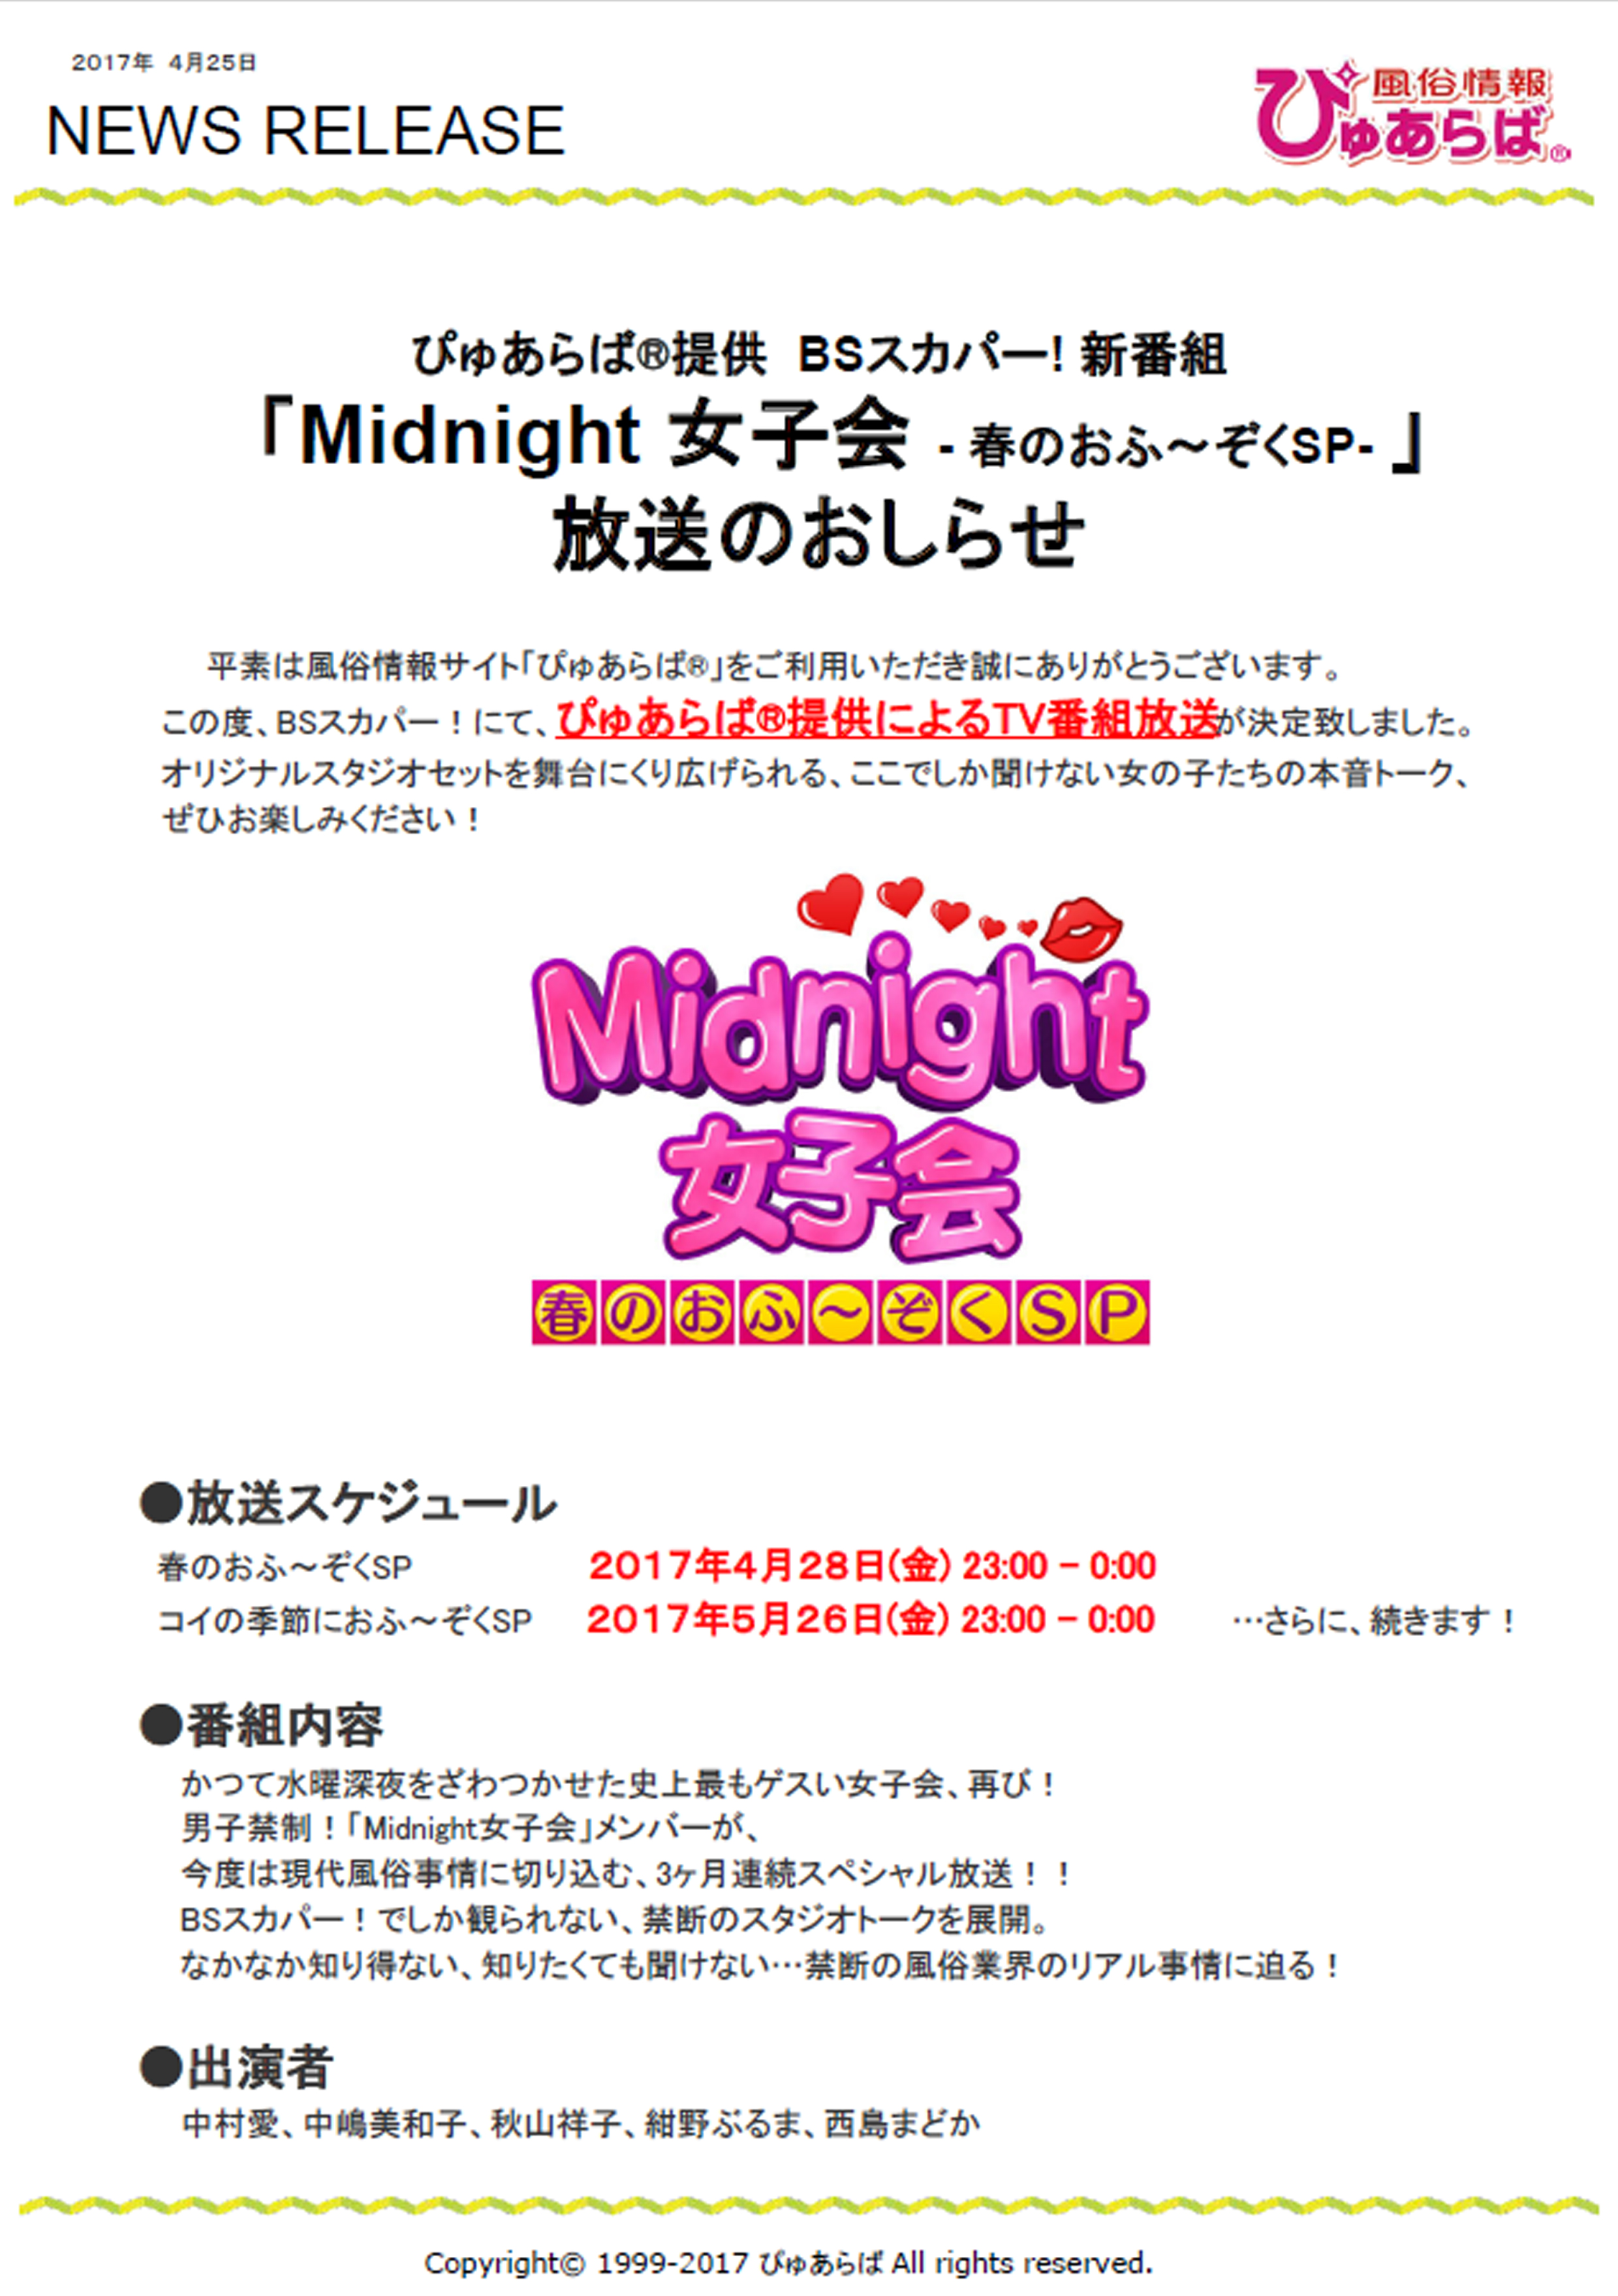 【ぴゅあらば】提供番組「Midnight女子会」放送のおしらせチラシ